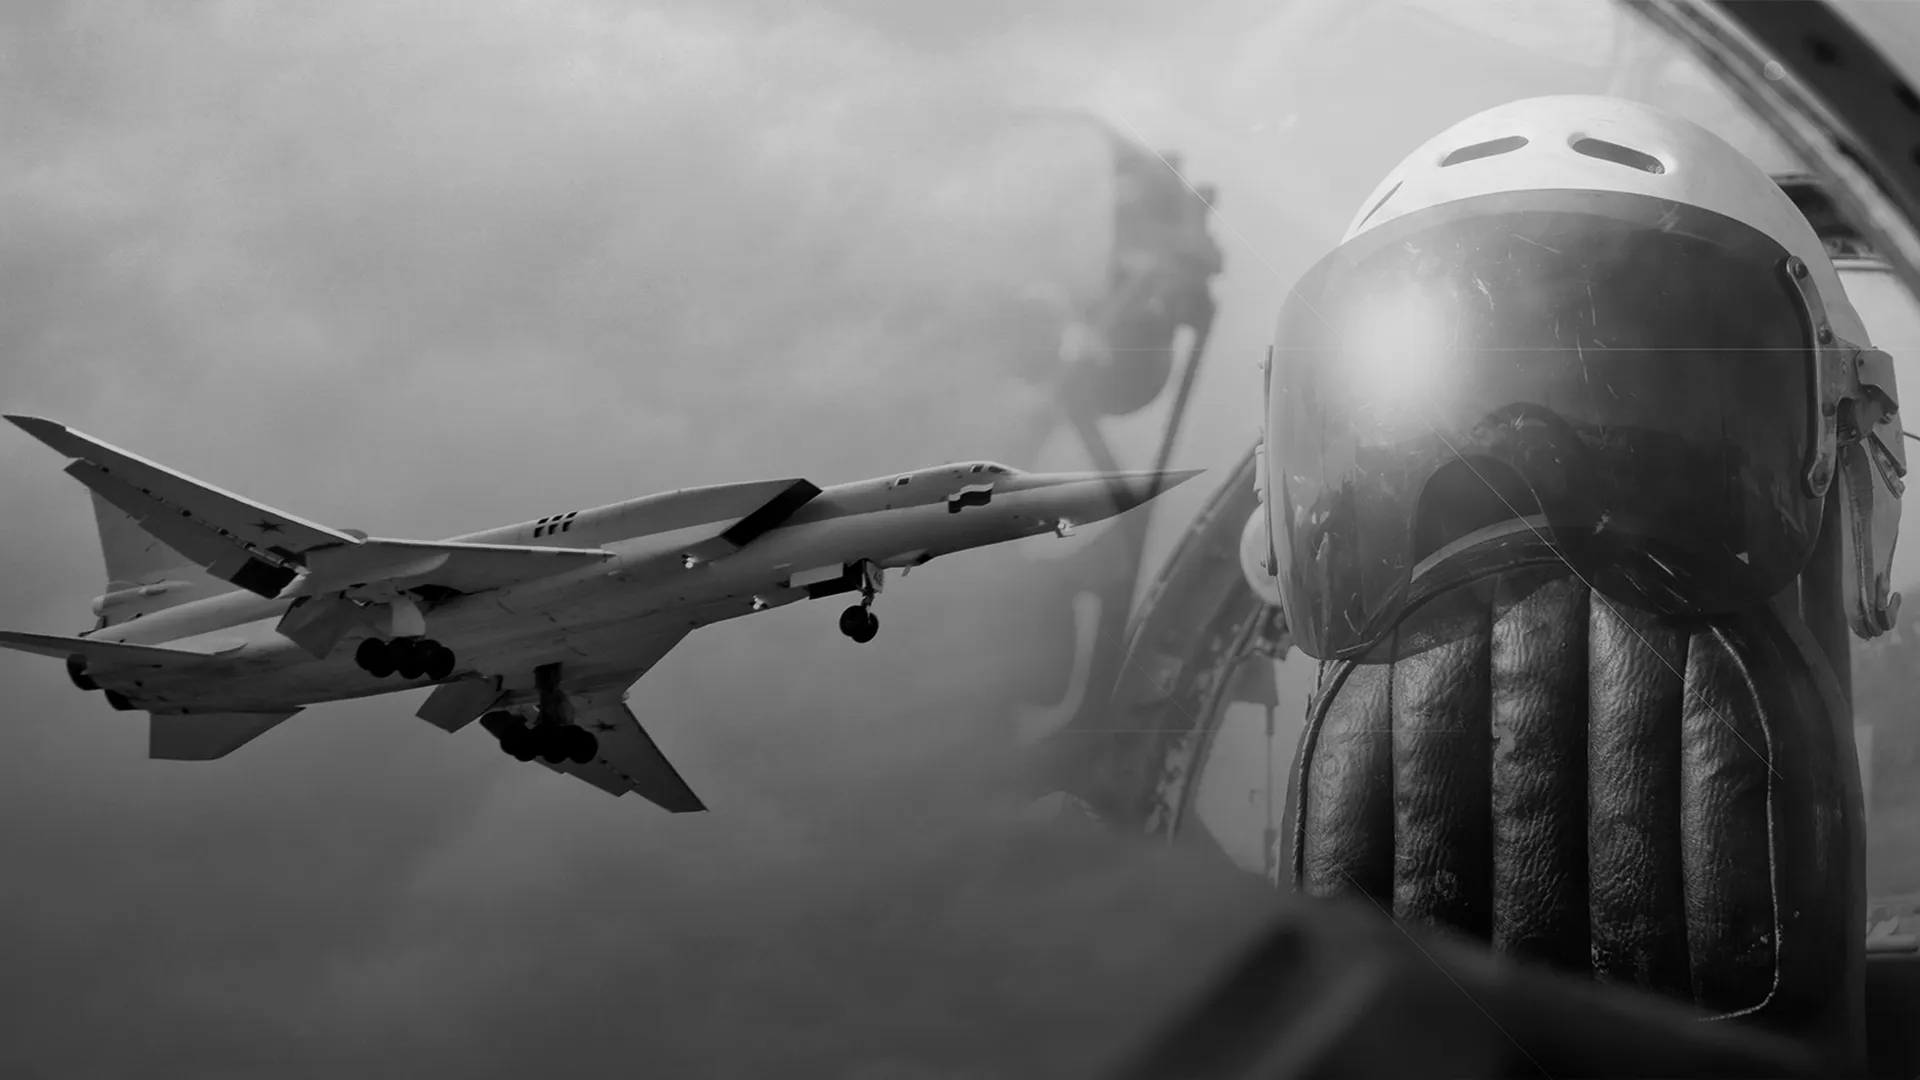 Бомбардировщик Ту-22М в небе и пилот в гермошлеме крупным планом